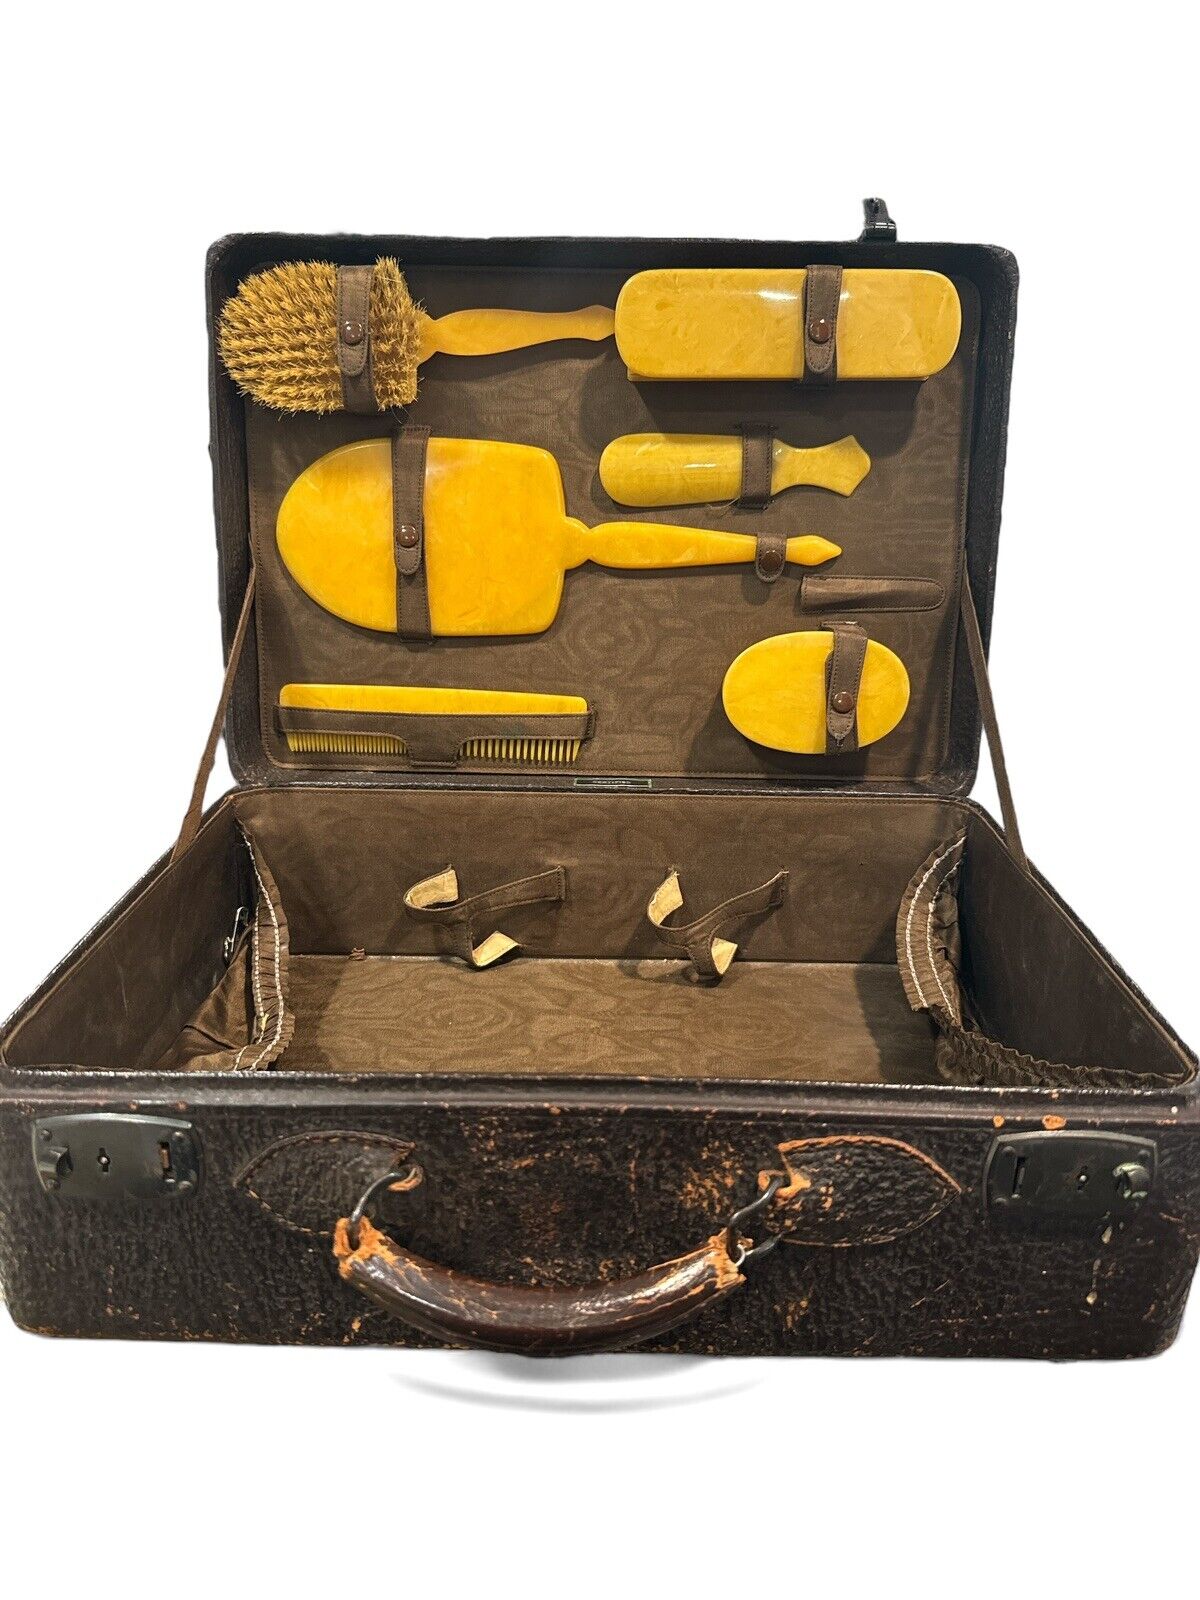 Vintage Art Deco 1930s Cowhide Travel Luggage Suitcase Vanity Kit mirror brushes